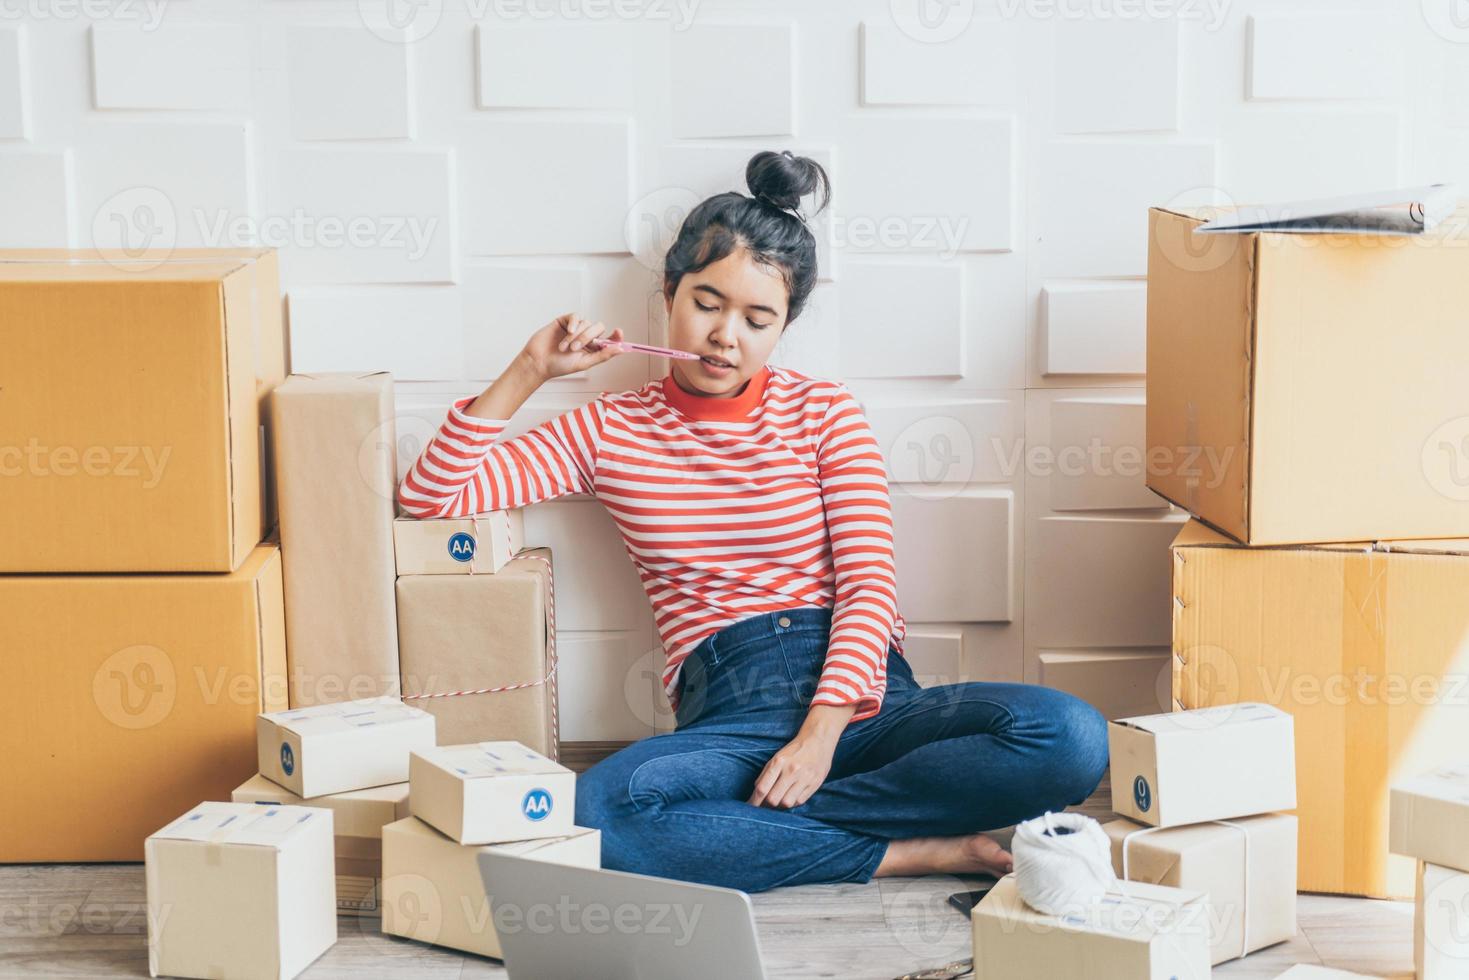 Proprietário de empresa mulher asiática trabalhando em casa com caixa de embalagem no local de trabalho - empreendedor de compras online de pmes ou conceito de trabalho freelance foto